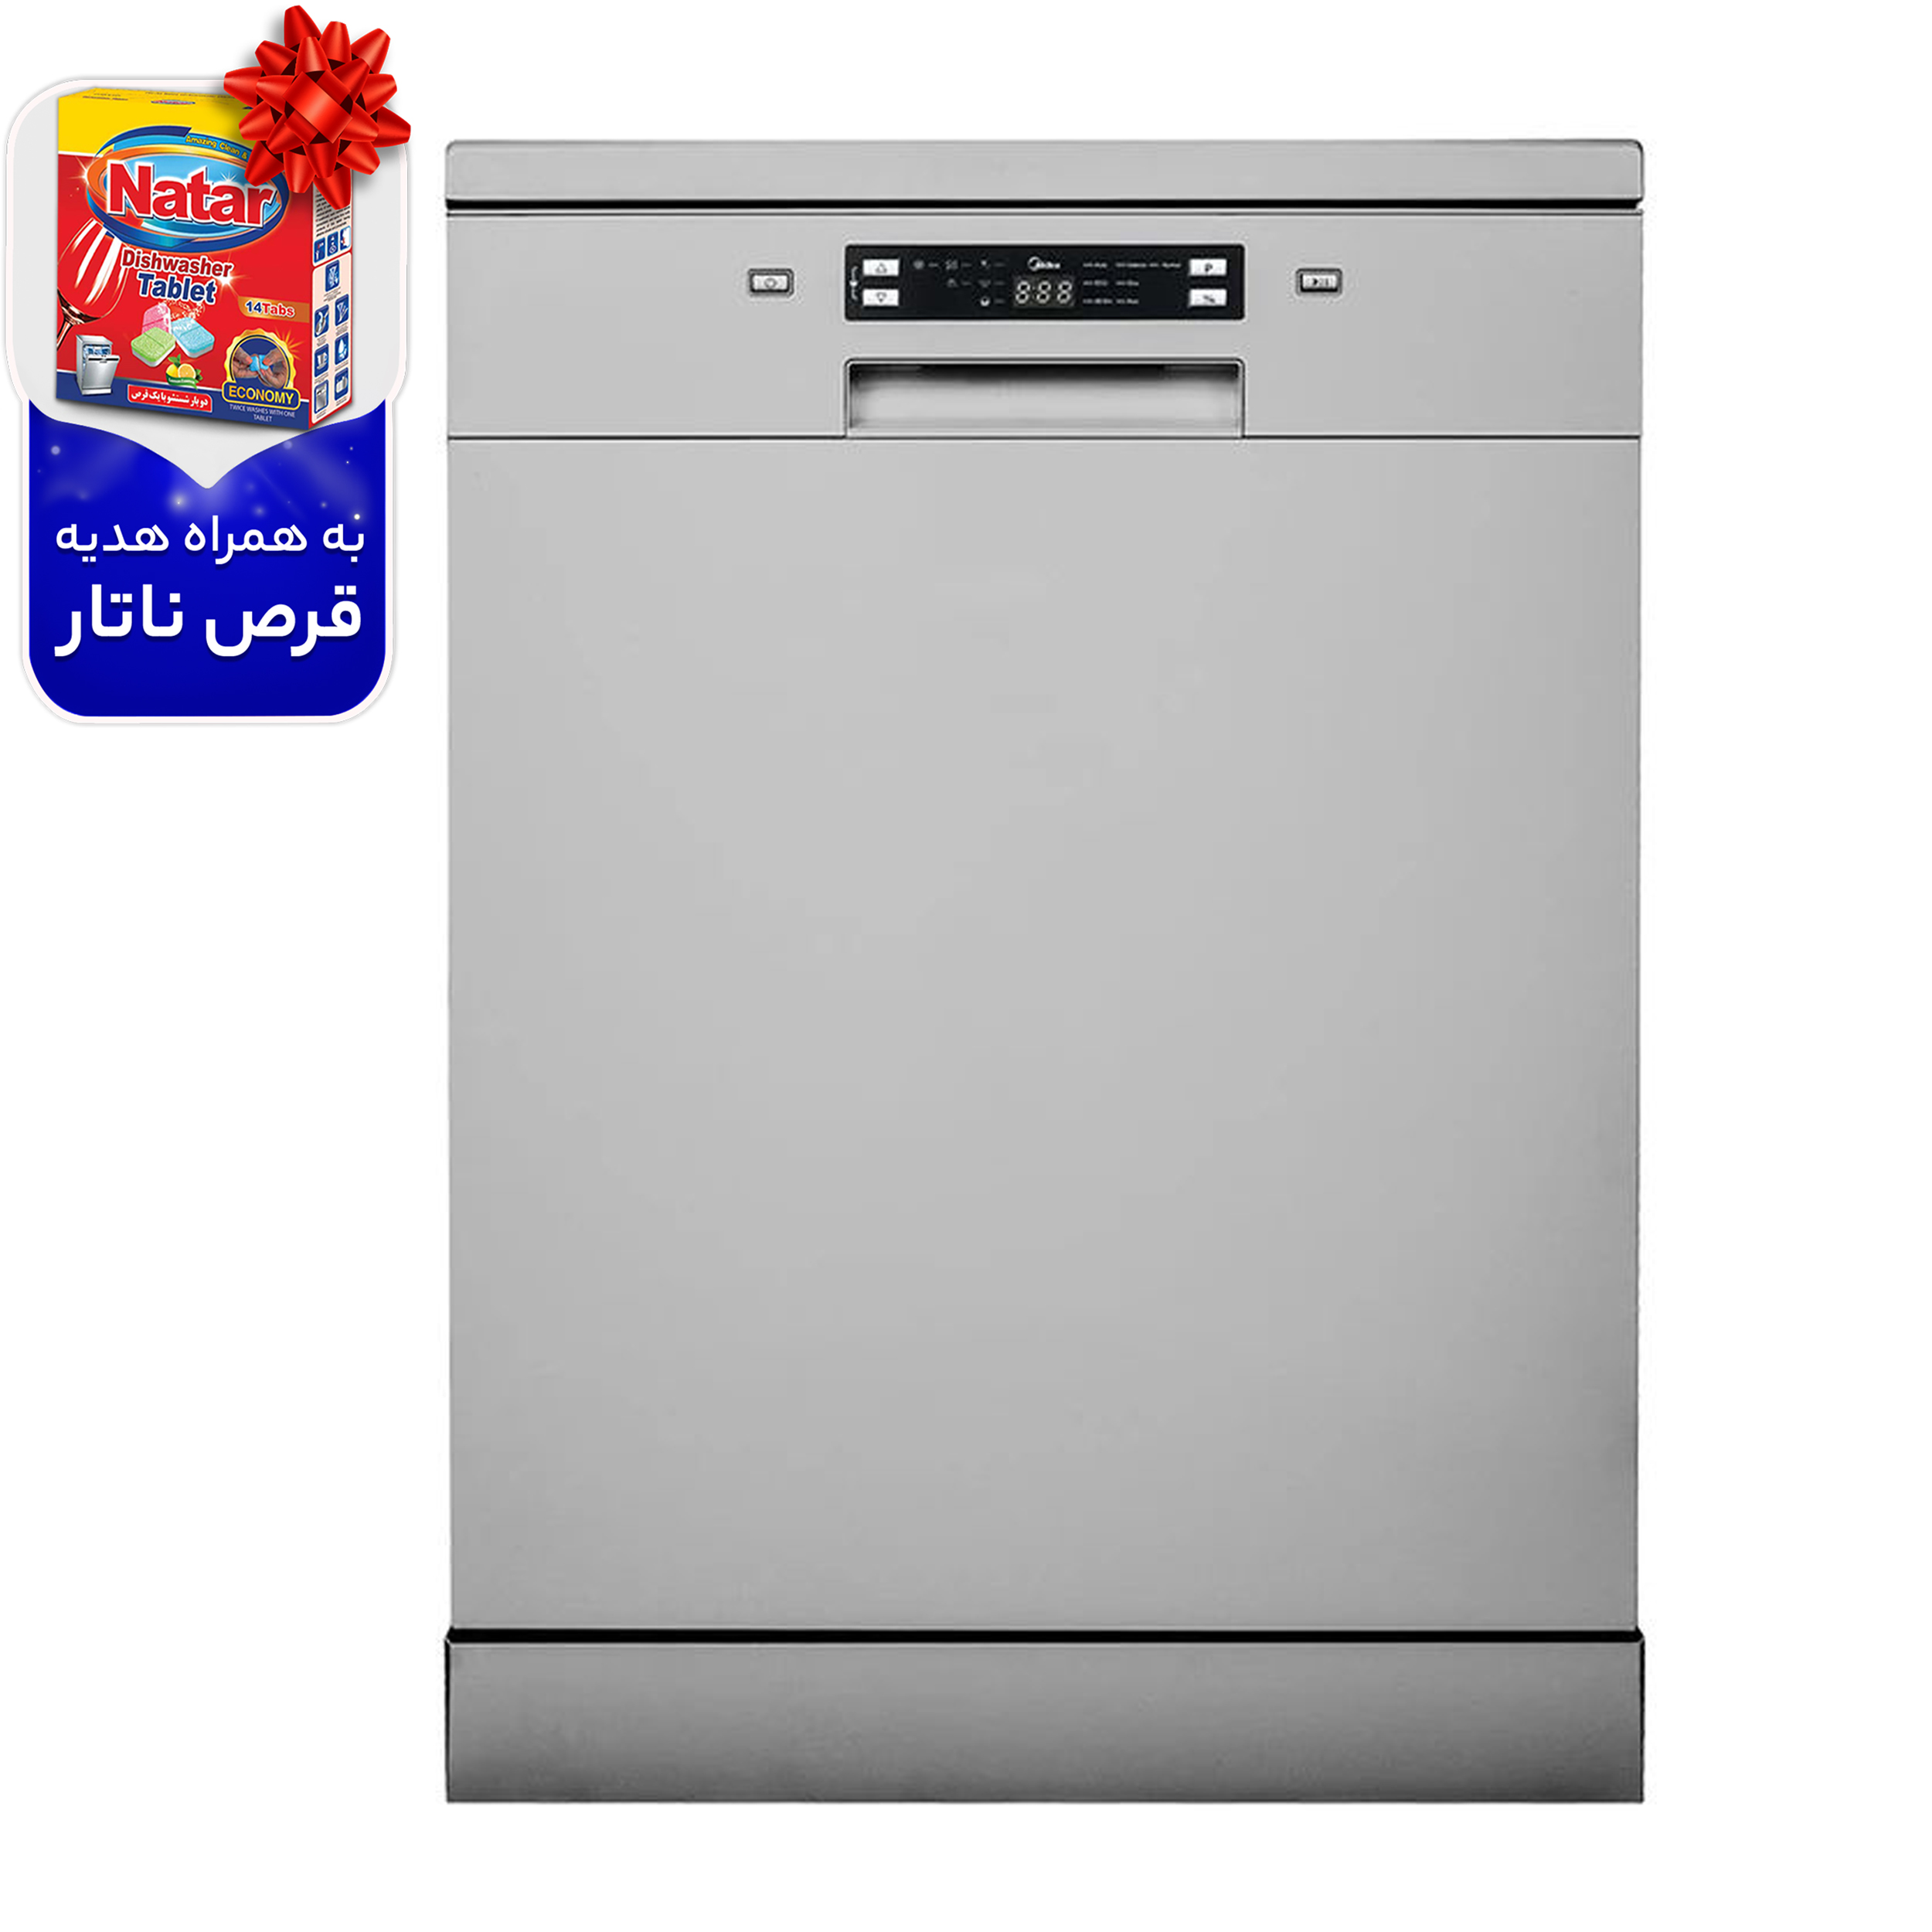 نکته خرید - قیمت روز ماشین ظرفشویی جی پلاس مدل GDW-M4573S خرید